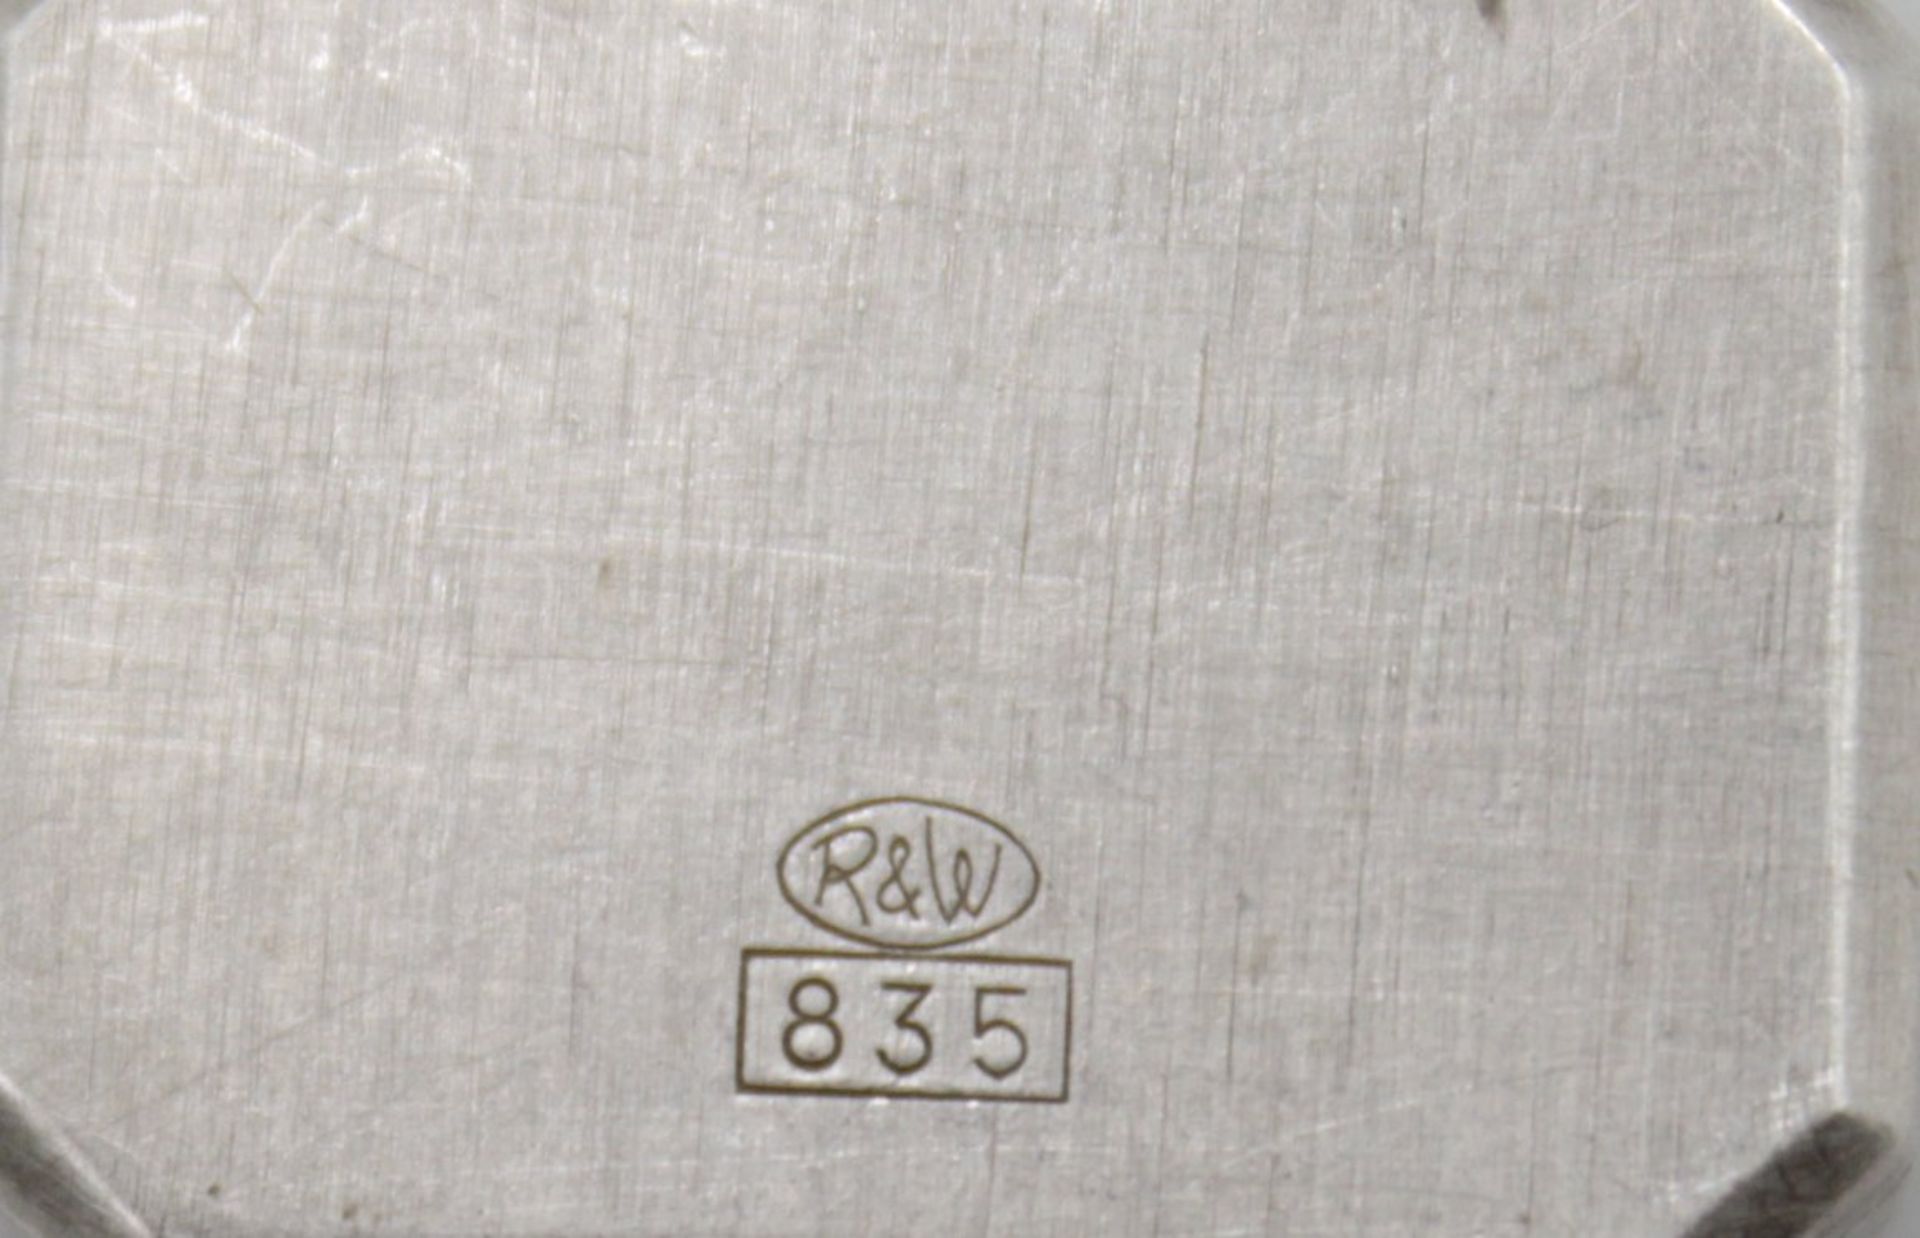 Damen-Armbanduhr, Ankra, 835er Silber, Kronenaufzug, Werk läuft, zus ca. 25,4gr. - Image 4 of 5